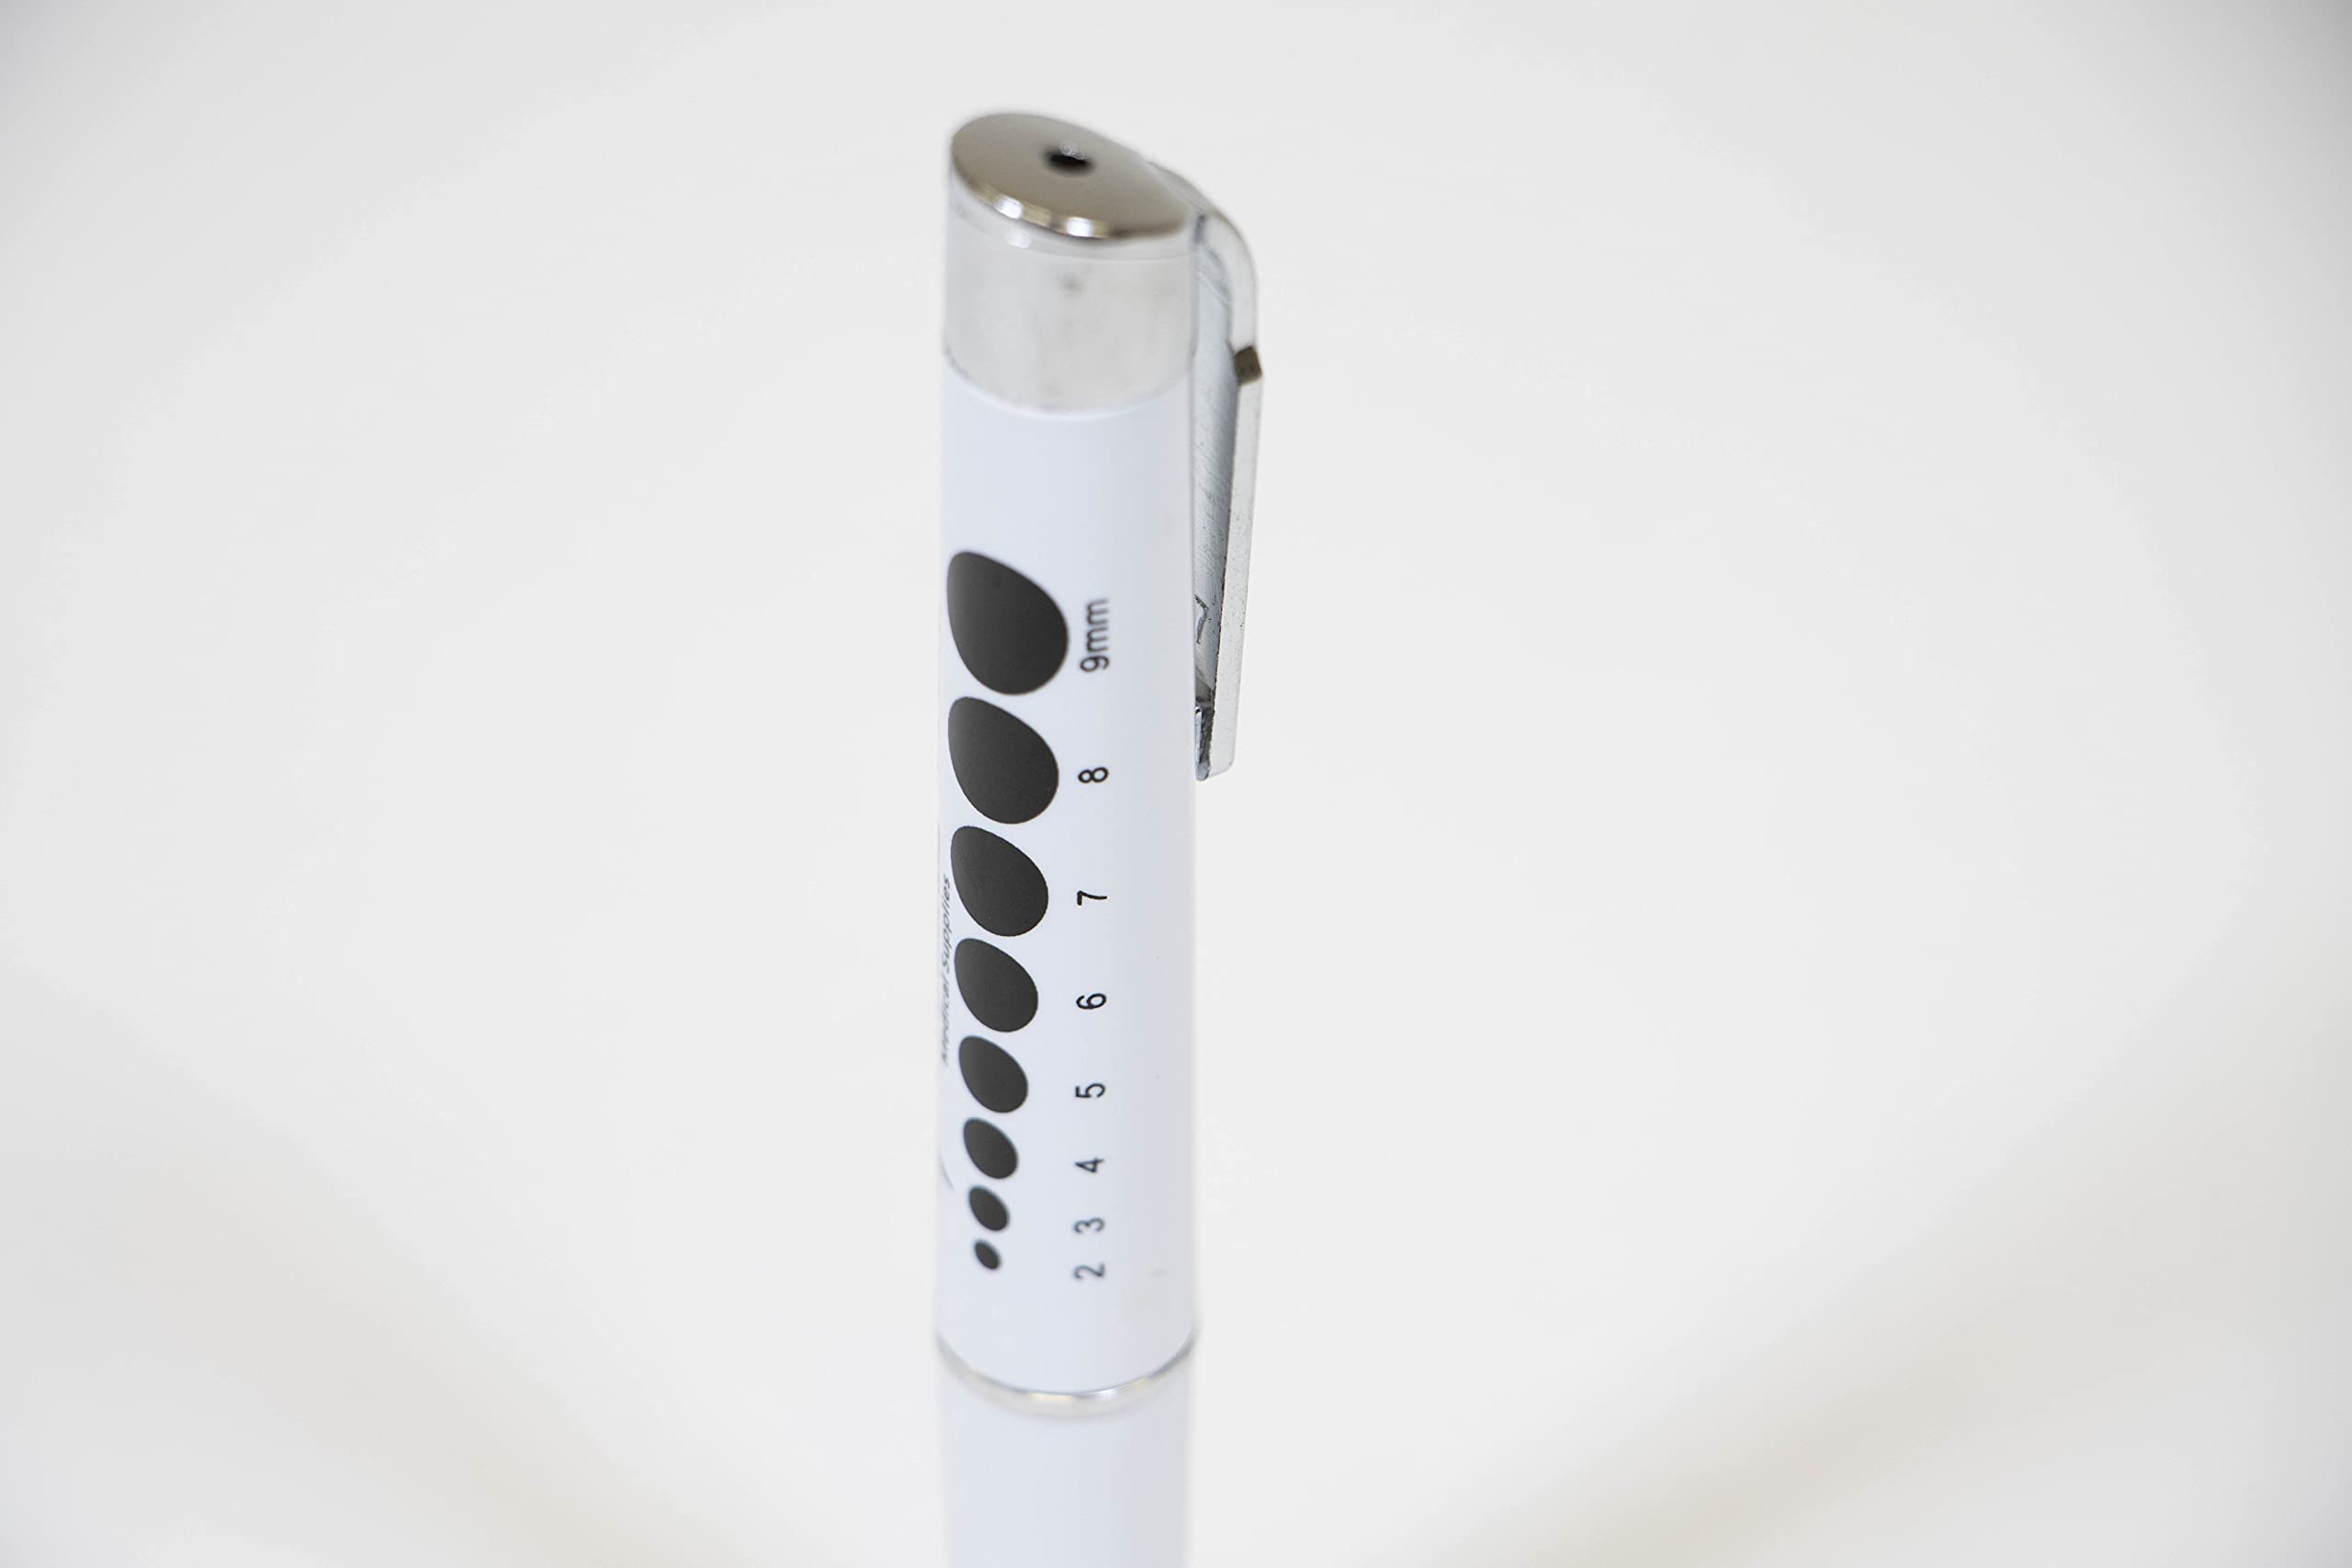 Primacare DL-9325-2 Pack of 2 LED Diagnostic Penlight with Imprinted Pupil Gauge, Reusable and Lightweight Medical Pen Light for Nurse, Student, Doctors EMT, Batteries Included, White